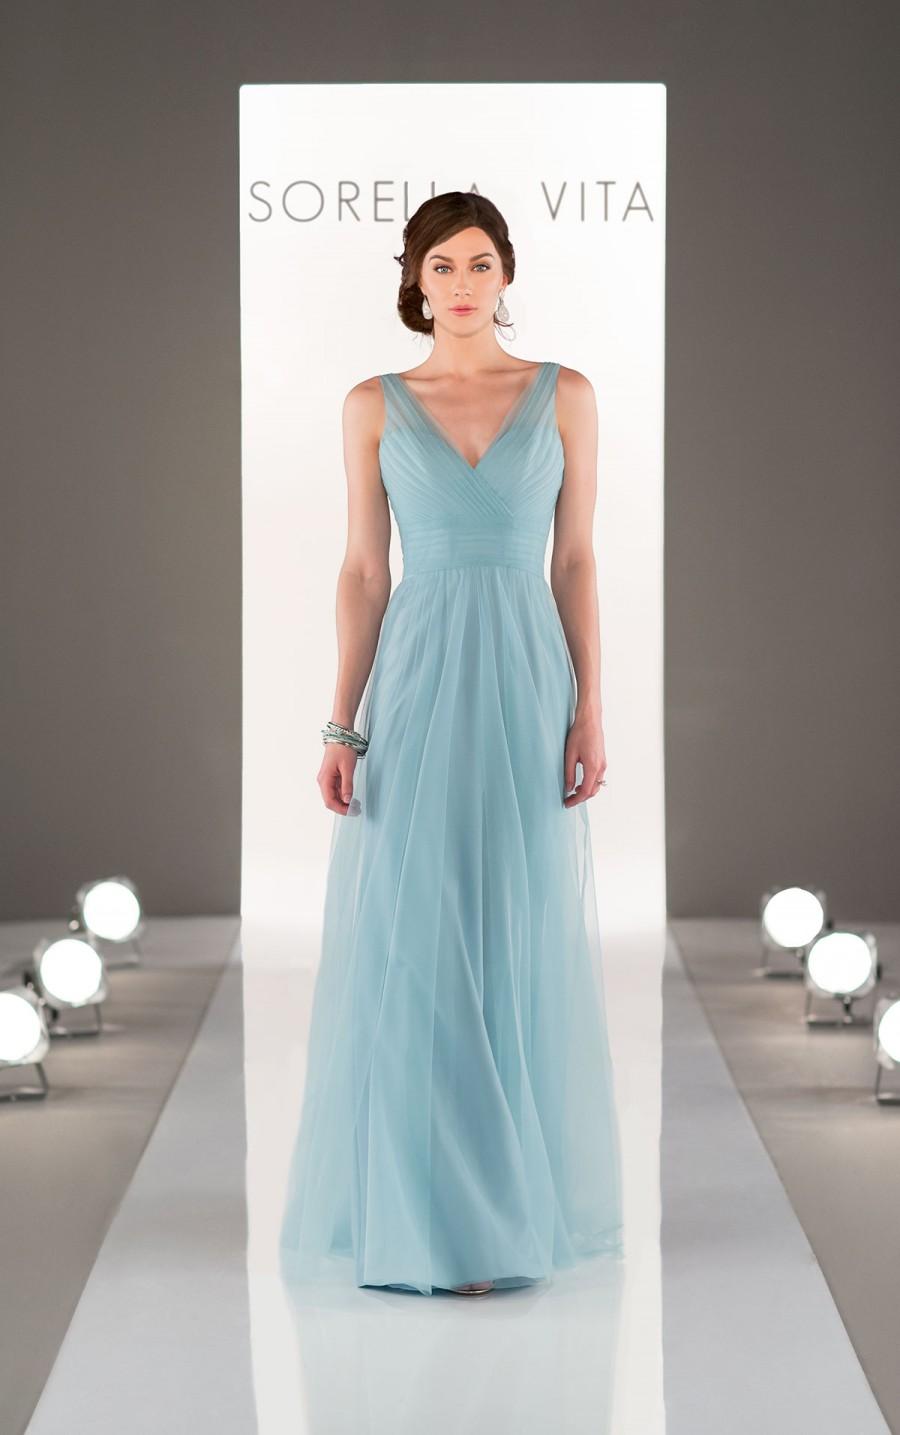 زفاف - Sorella Vita Tulle Bridesmaid Dress Style 8702